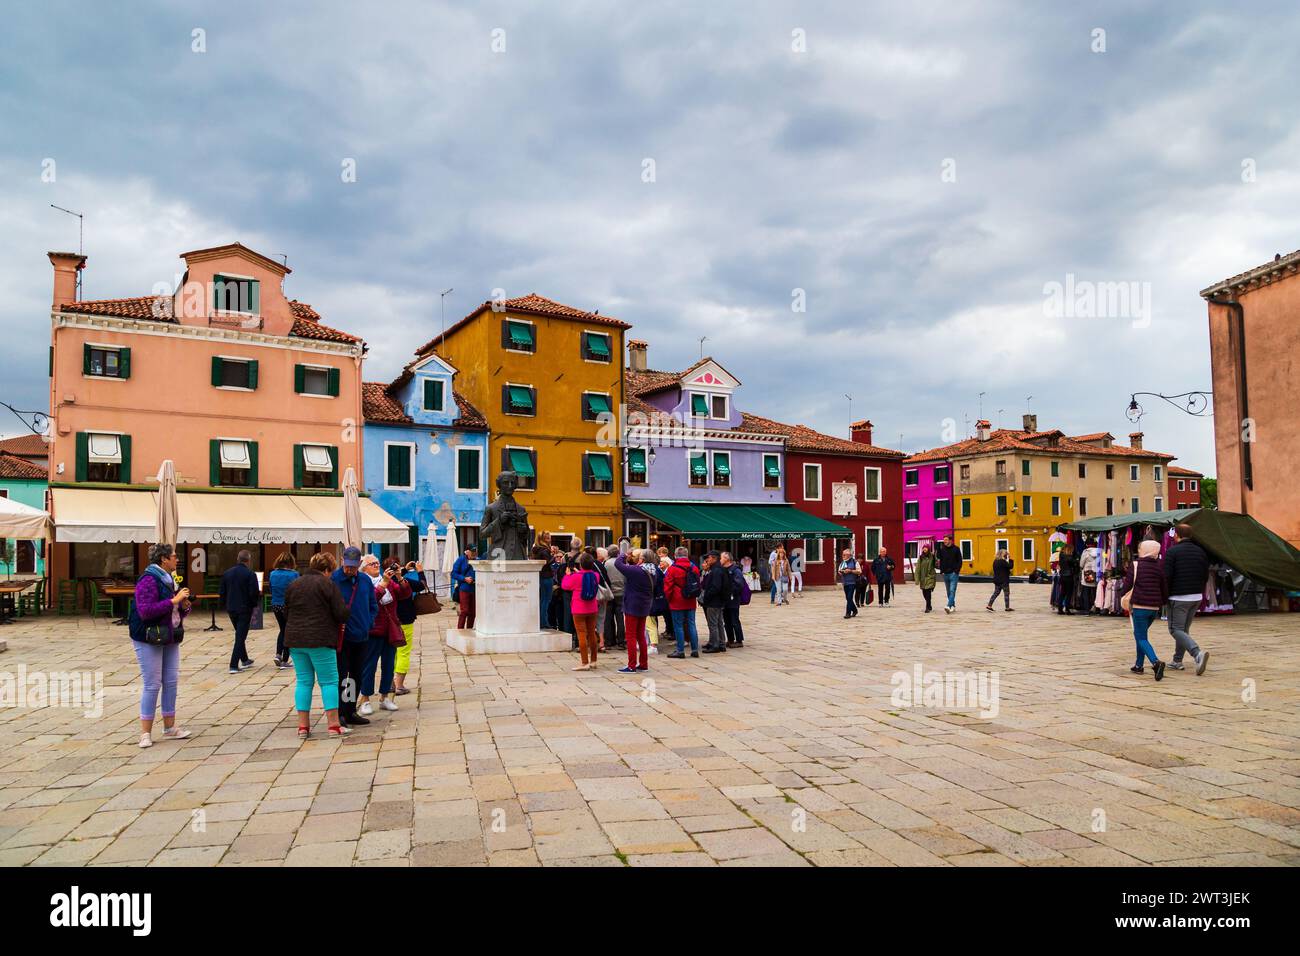 Burano, Italien - 6. Oktober 2019: Touristen in der Nähe der Statue von Baldassare Galuppi auf dem Hauptplatz von Burano, der Piazza Galuppi. Helle traditionelle farbenfrohe Gebäude auf der Insel Burano, Venedig, Italien. Stockfoto